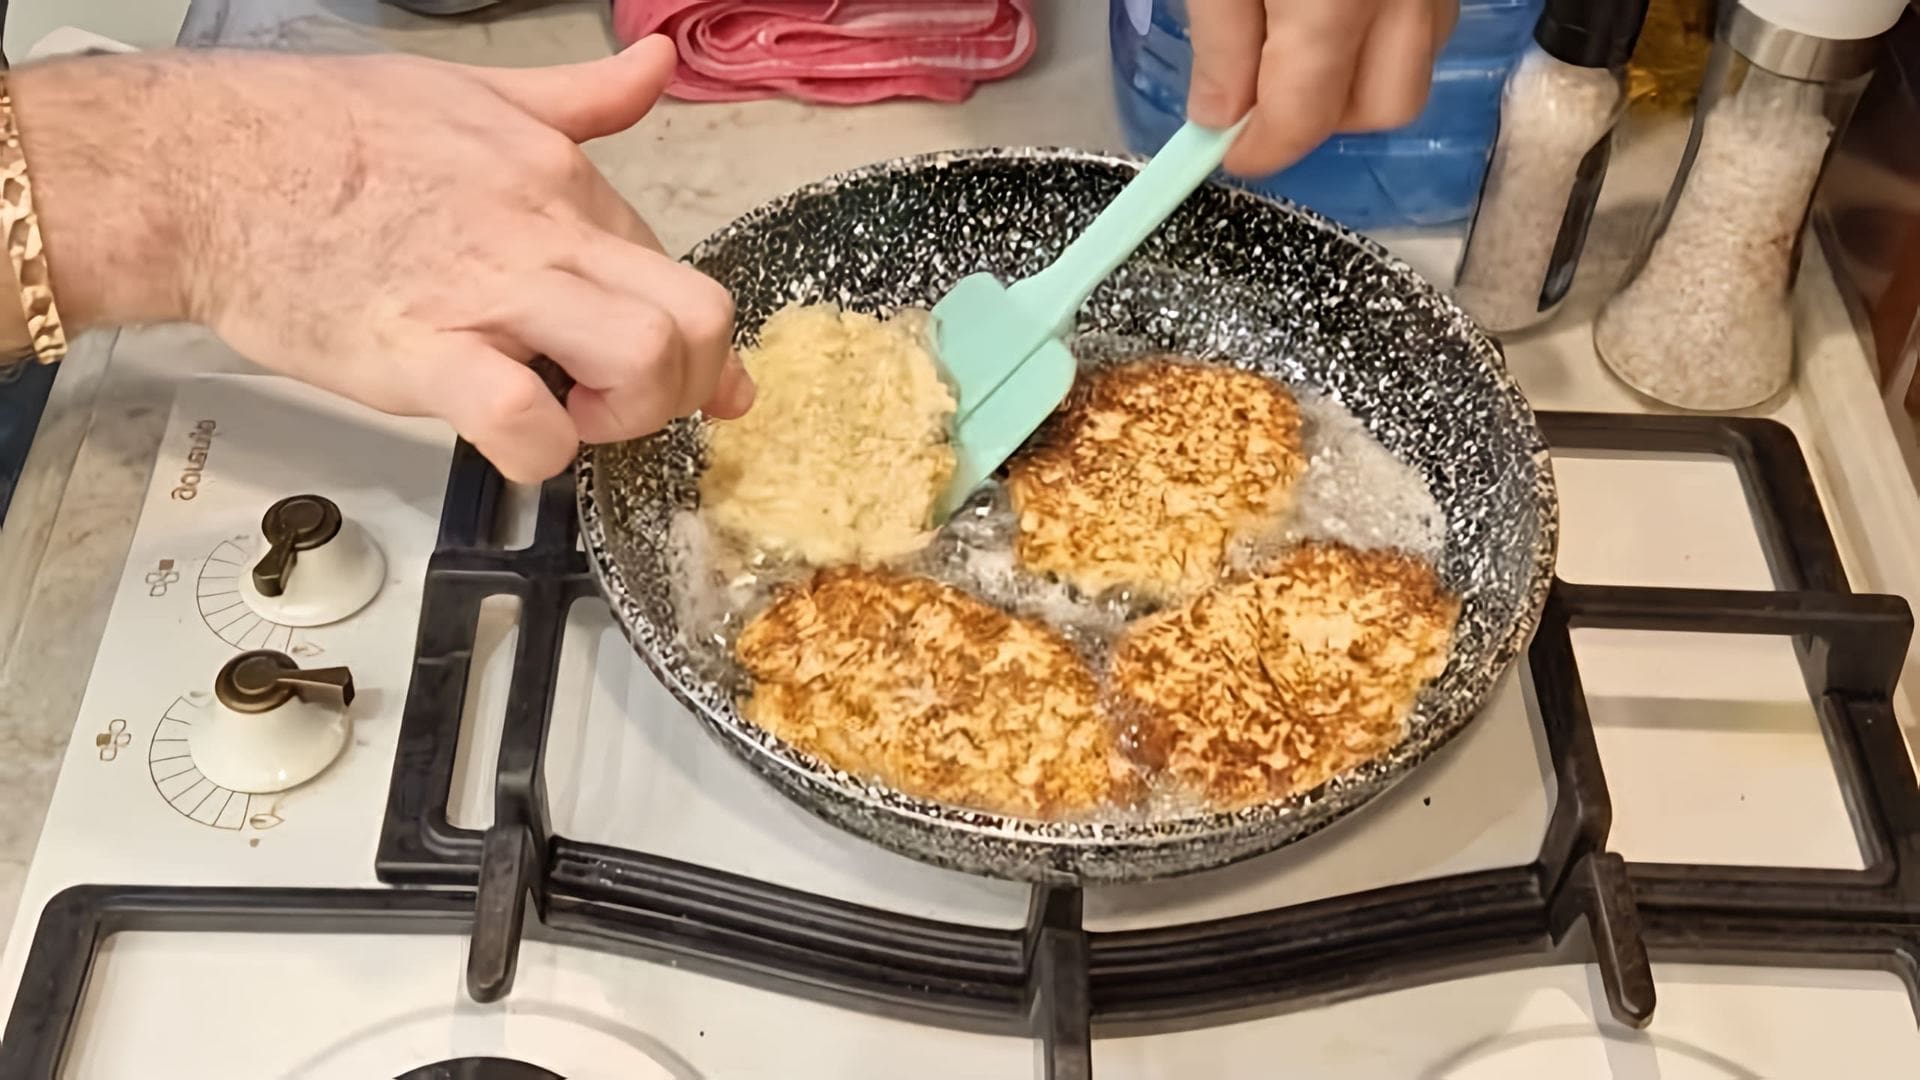 В этом видео демонстрируется рецепт приготовления драников из капусты